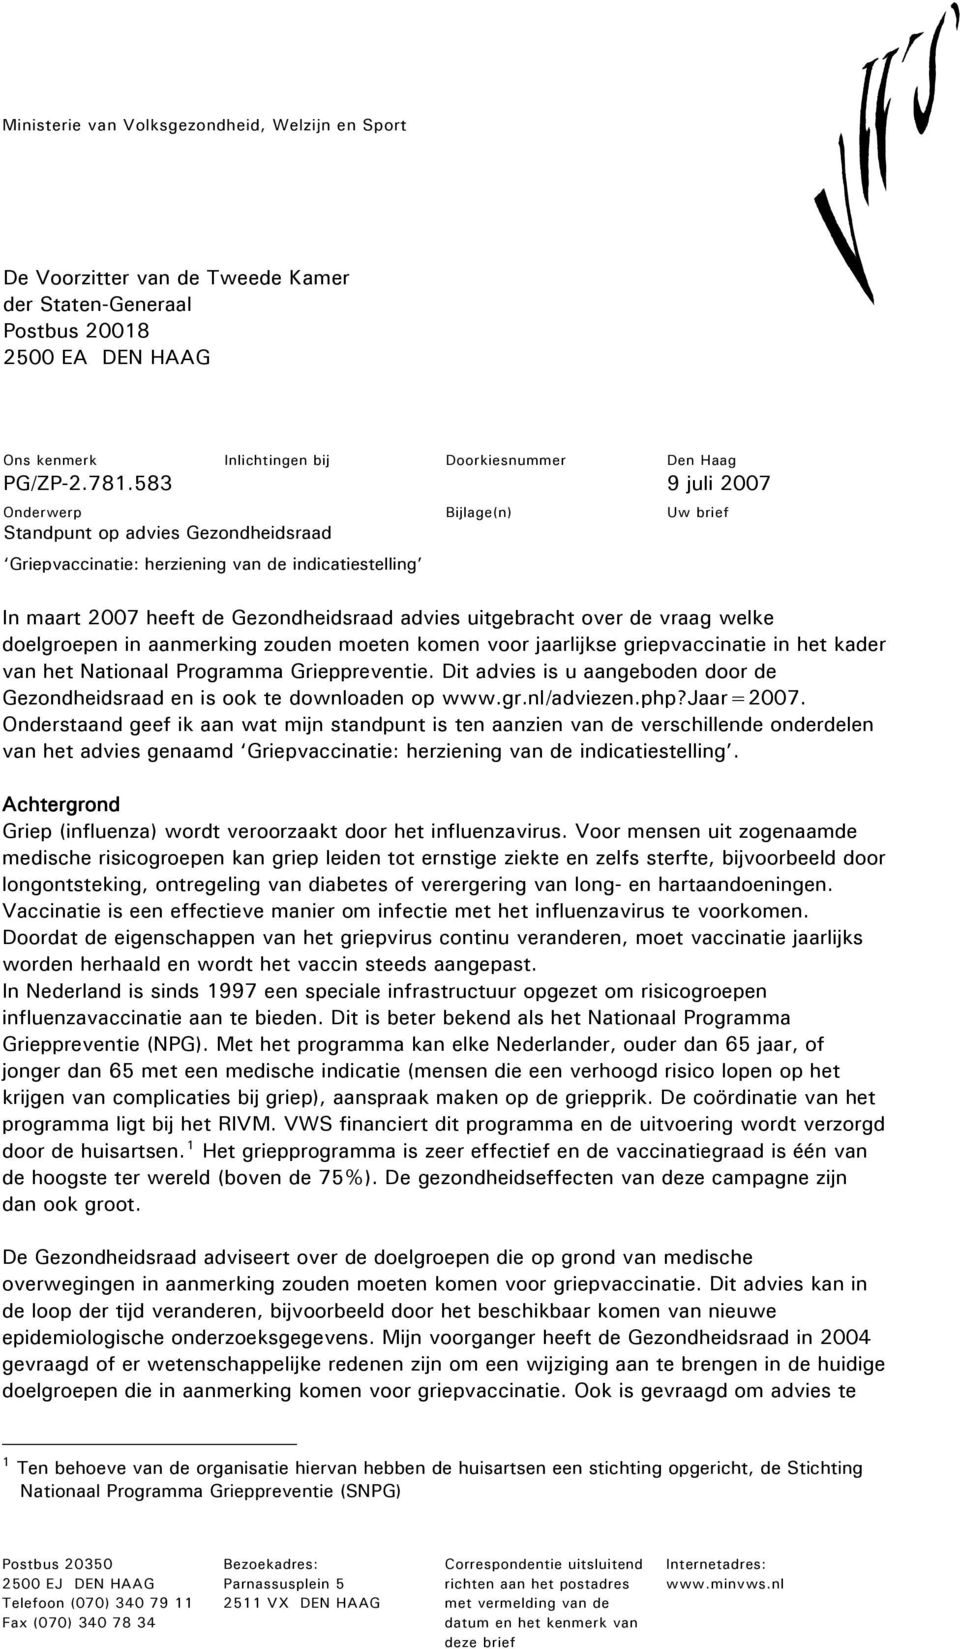 jaarlijkse griepvaccinatie in het kader van het Nationaal Programma Grieppreventie. Dit advies is u aangeboden door de Gezondheidsraad en is ook te downloaden op www.gr.nl/adviezen.php?jaar=2007.